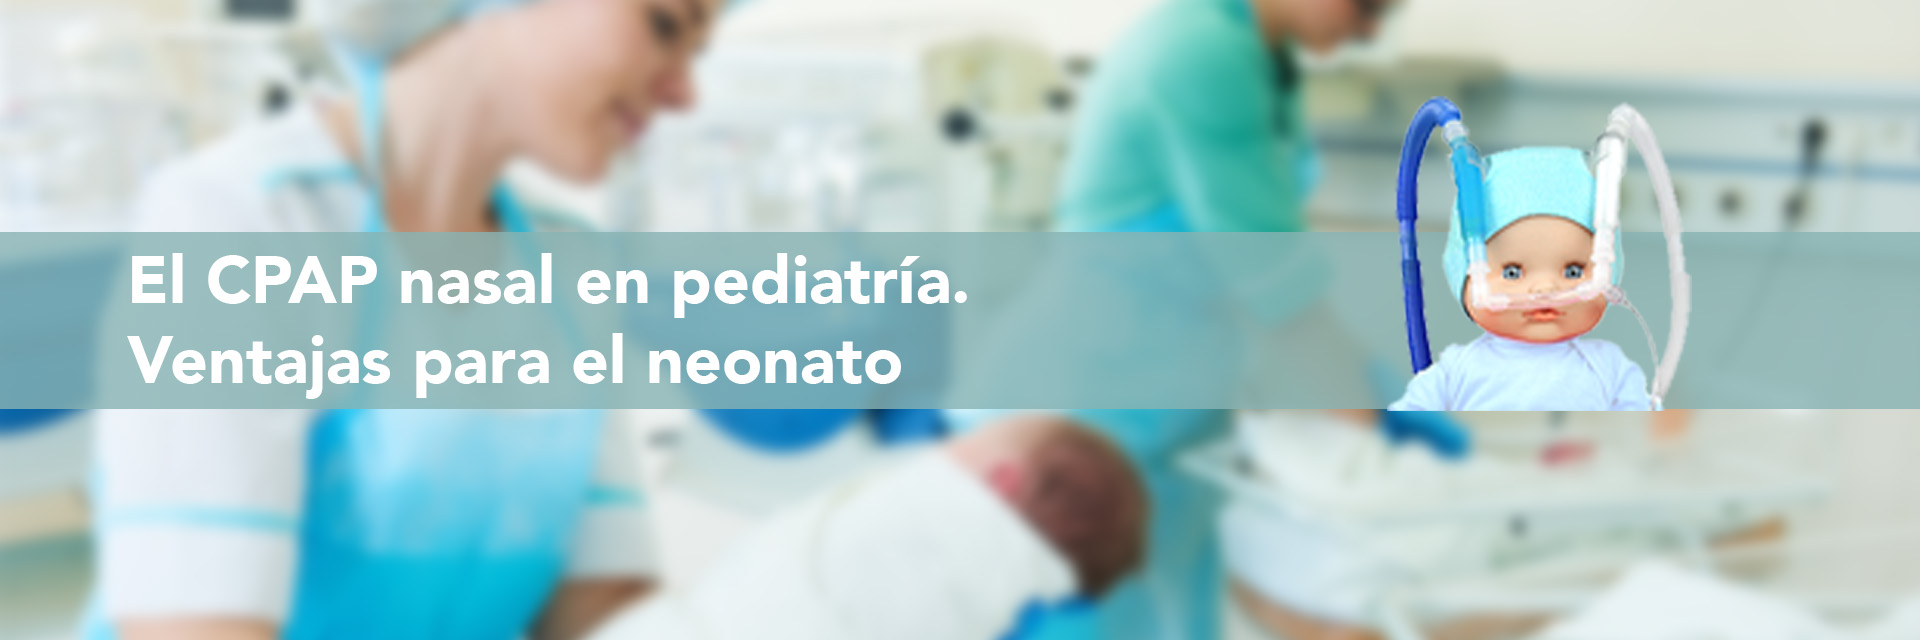 El CPAP nasal en pediatría, ventajas para el neonato